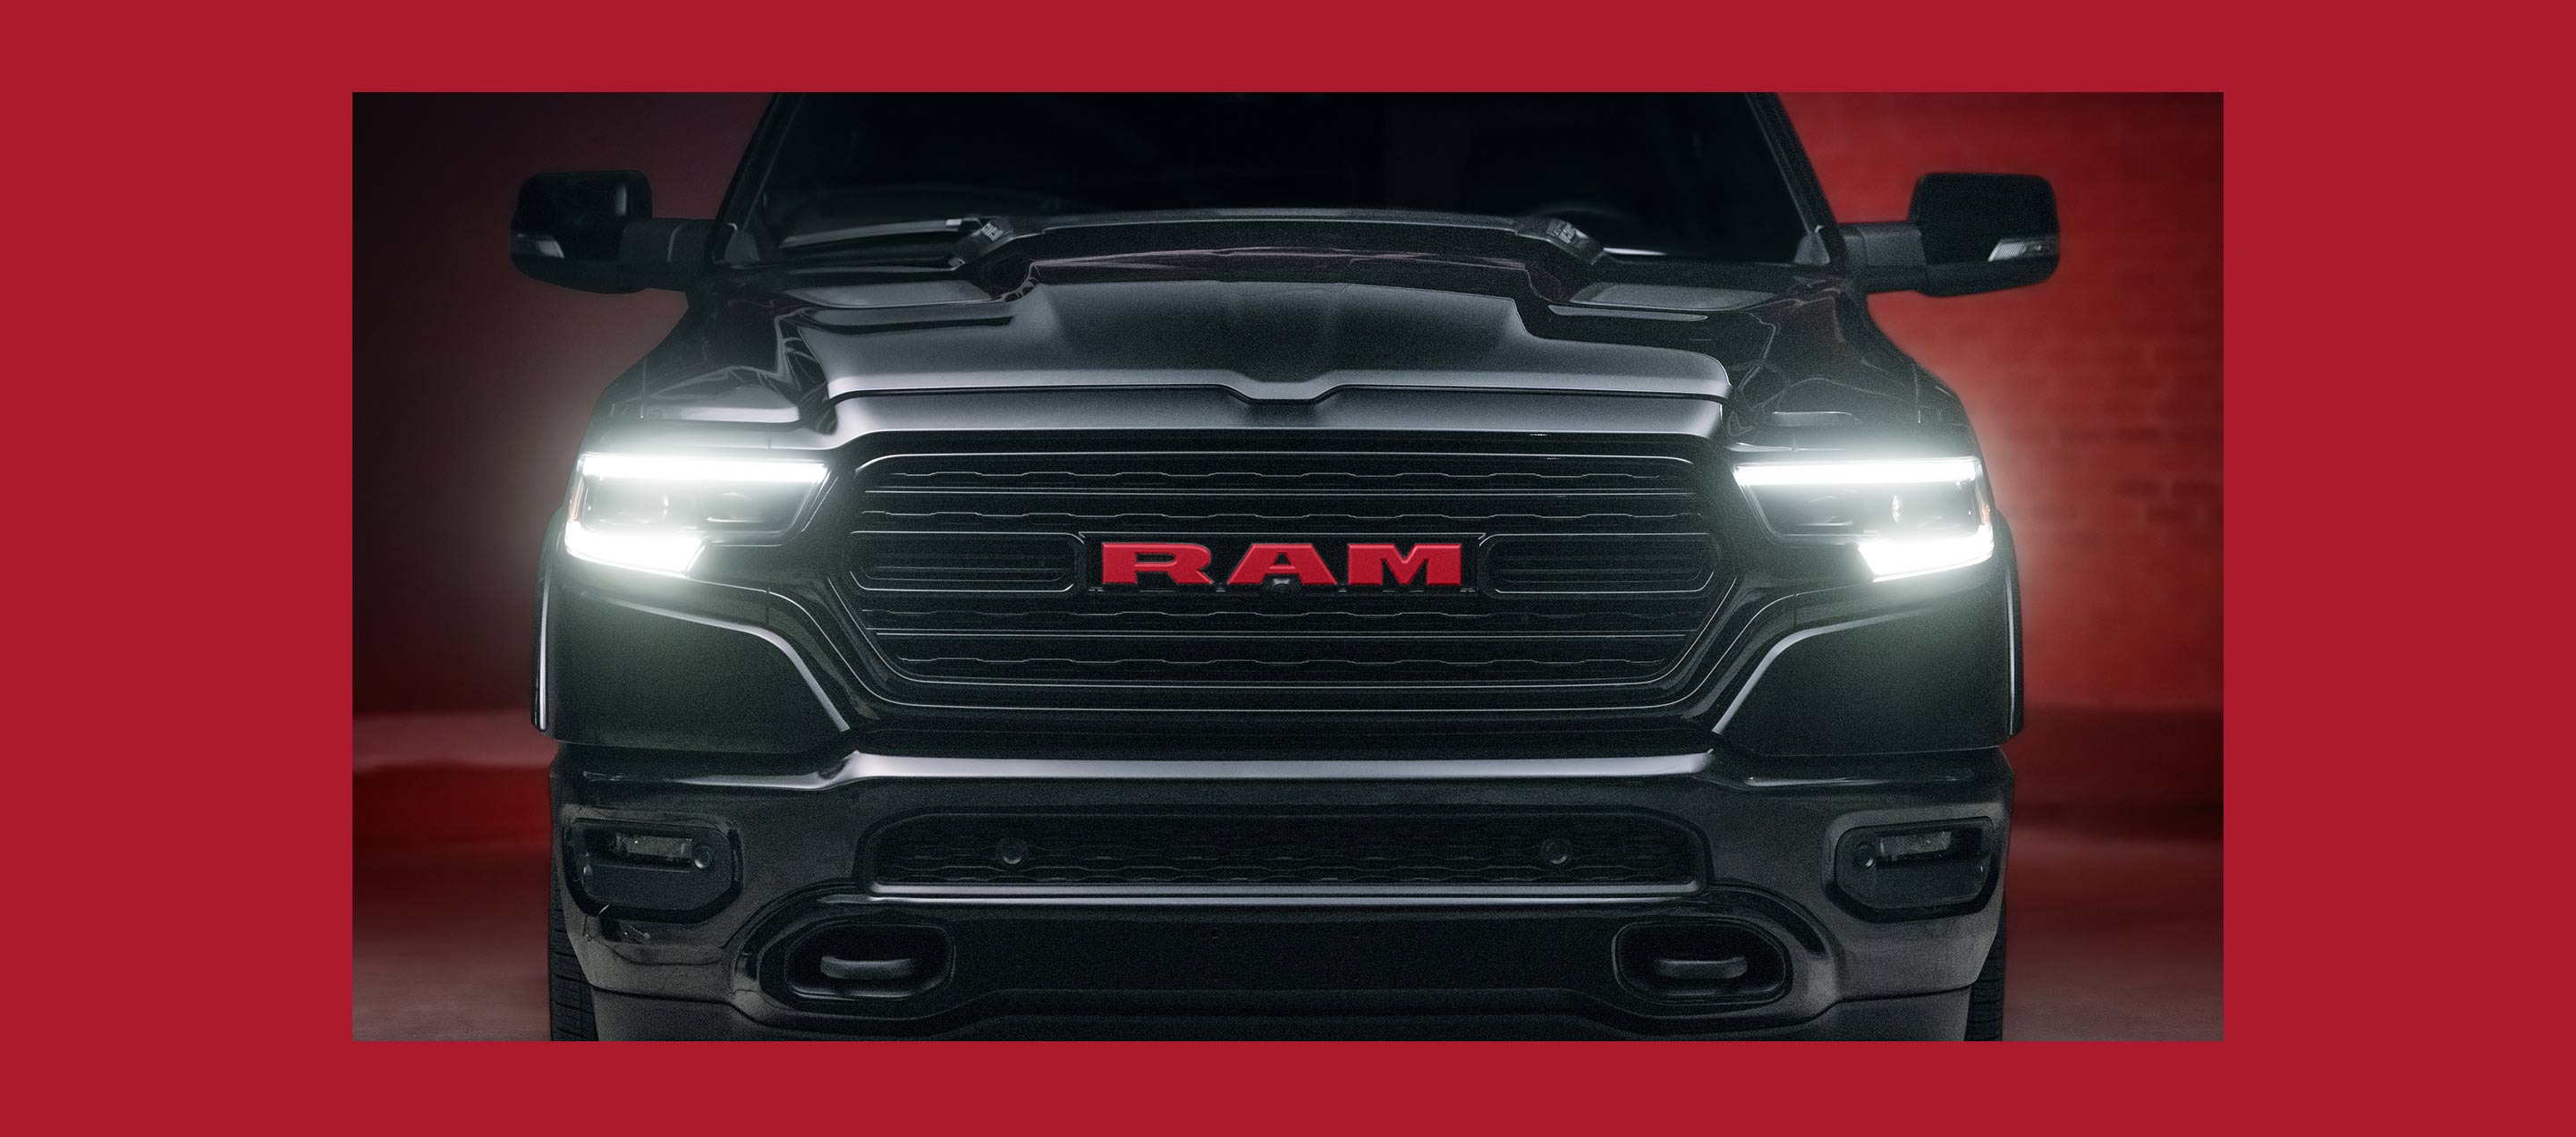 Vista frontal de la camioneta Ram 1500 Ram Red Edition​​​​​​​ 2022. Reproducir video.